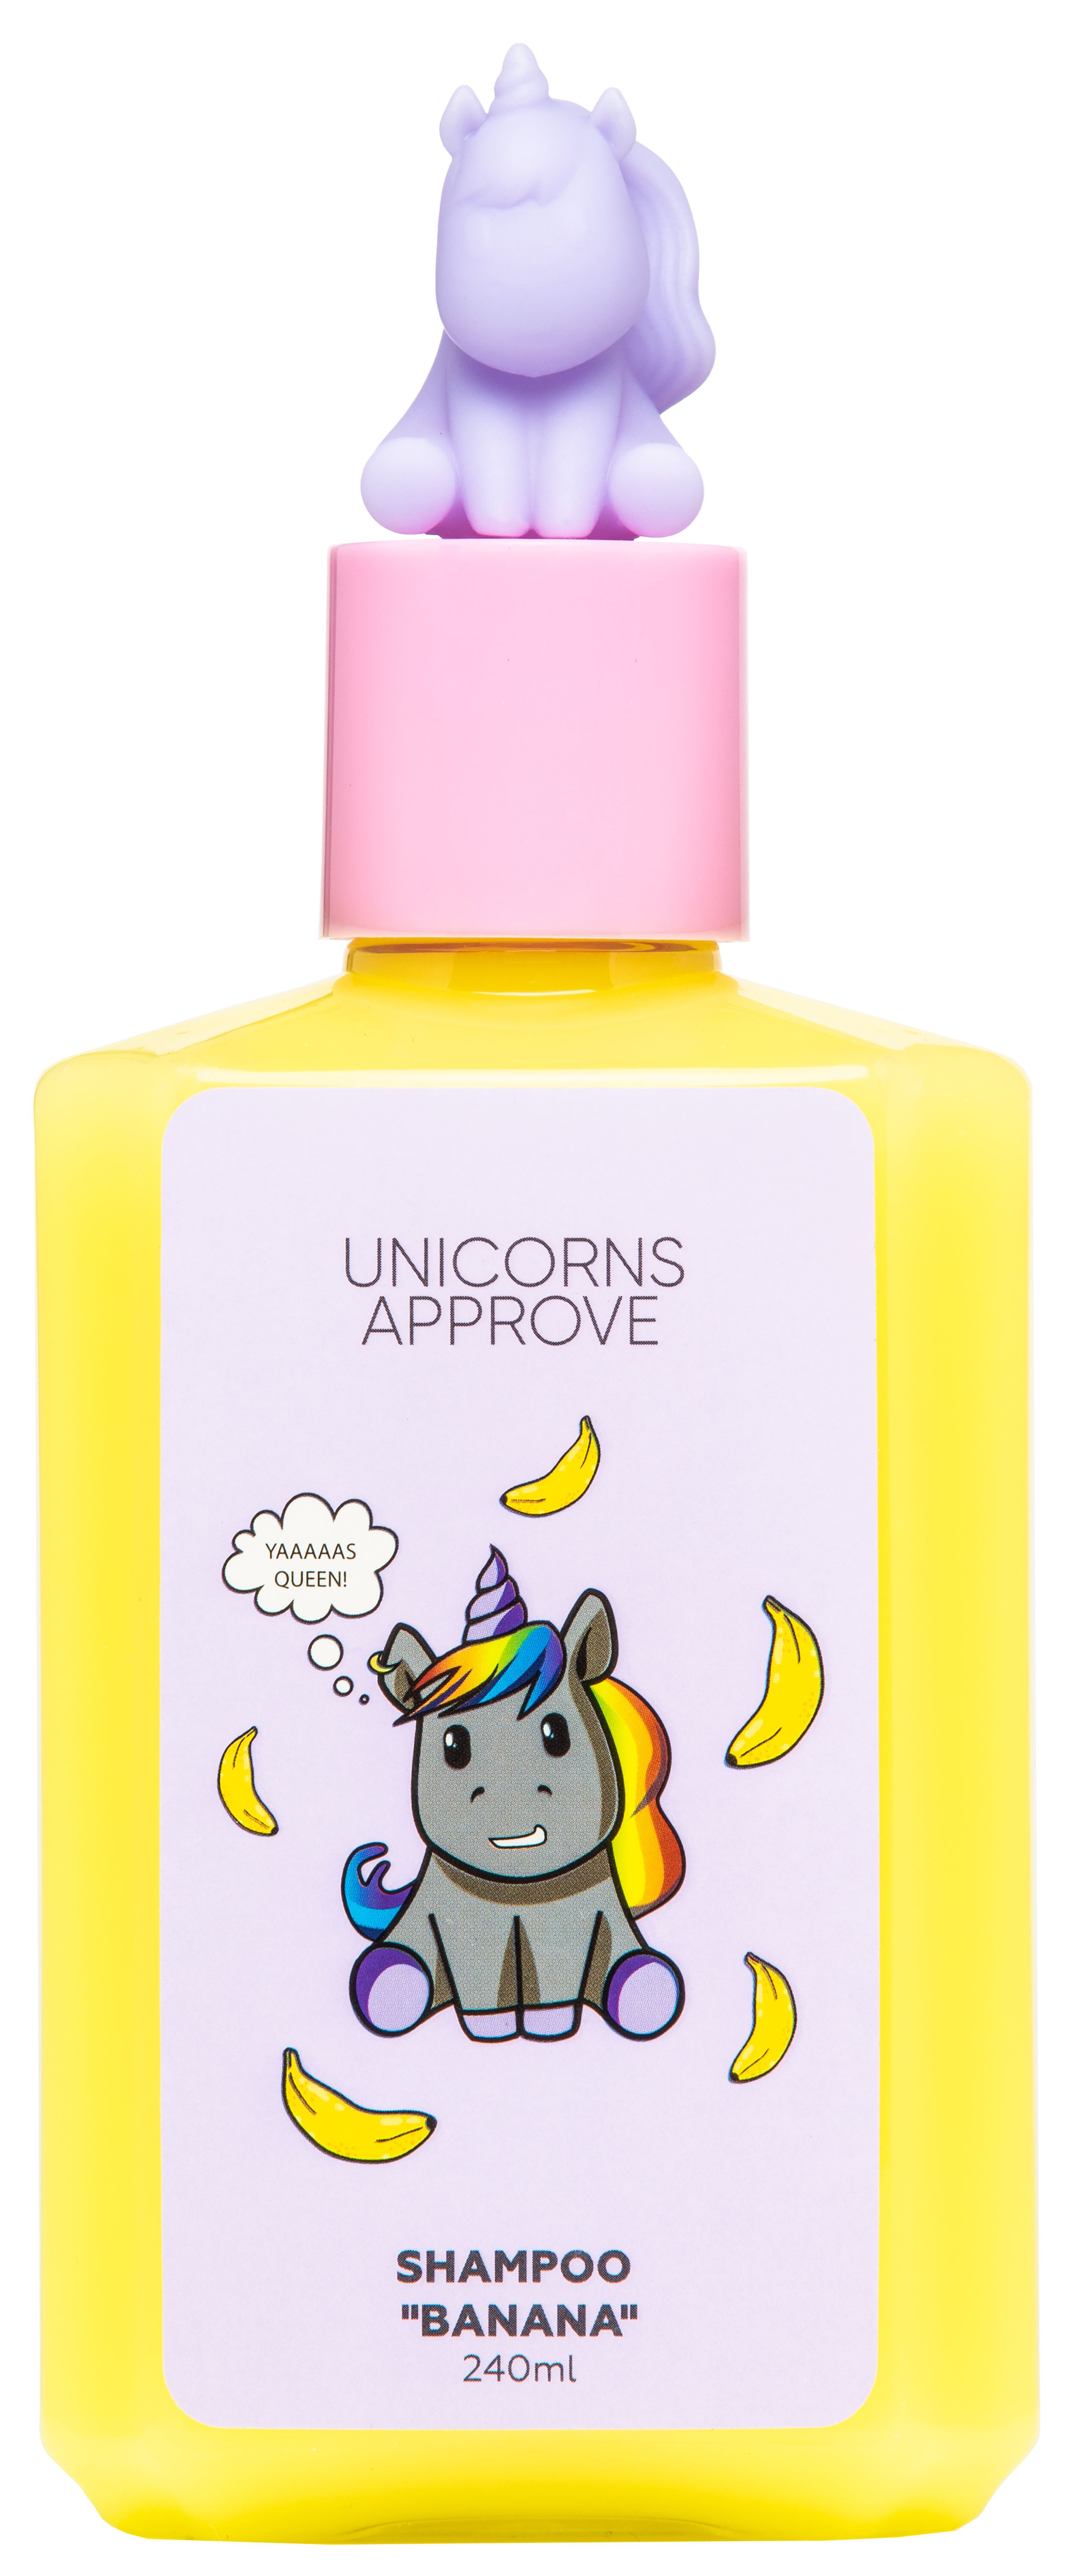 Unicorns approve гель для душа. Unicorns approve шампунь. Unicorns approve шампунь клубника 150 мл. Шампунь с единорогом. Шампунь для волос с единорогом.